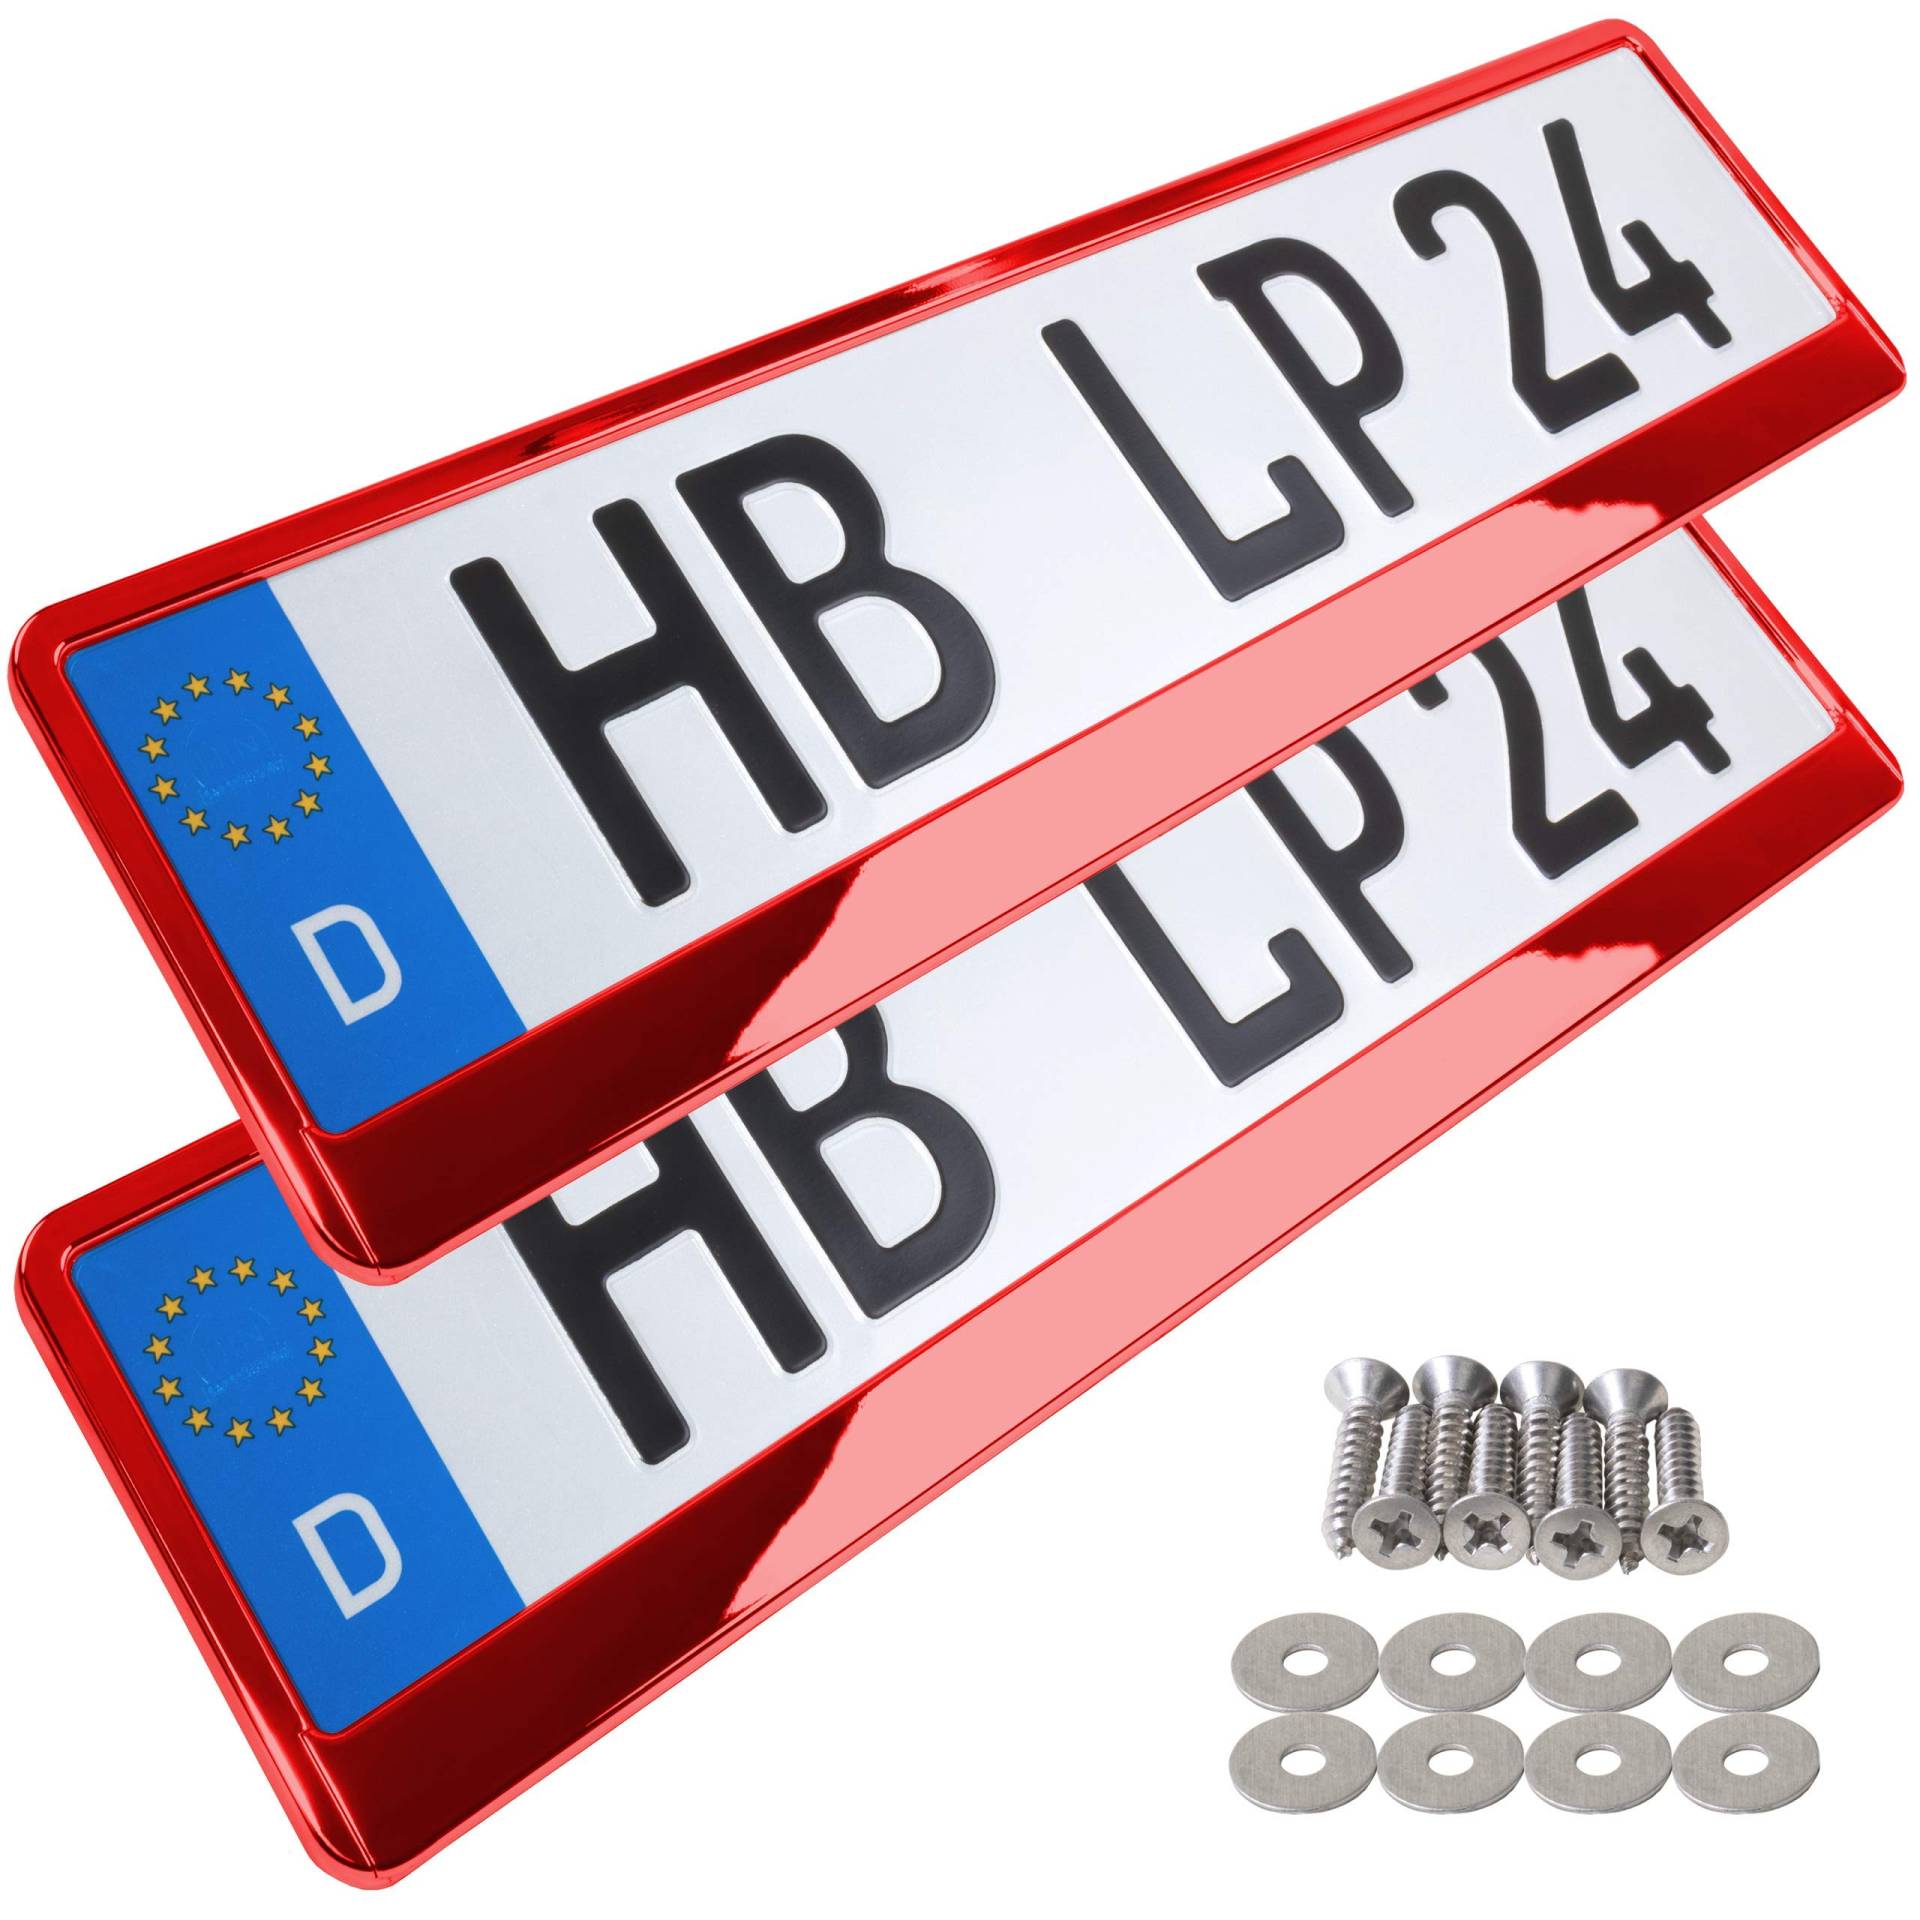 A157 Kennzeichenhalter 2 Stück Auto Nummernschildhalter rot chrom Kennzeichenverstärker Kennzeichenhalterung Nummernschildhalterung Verstärker Halter für Kennzeichen Nummernschild edel glänzend von L & P Car Design